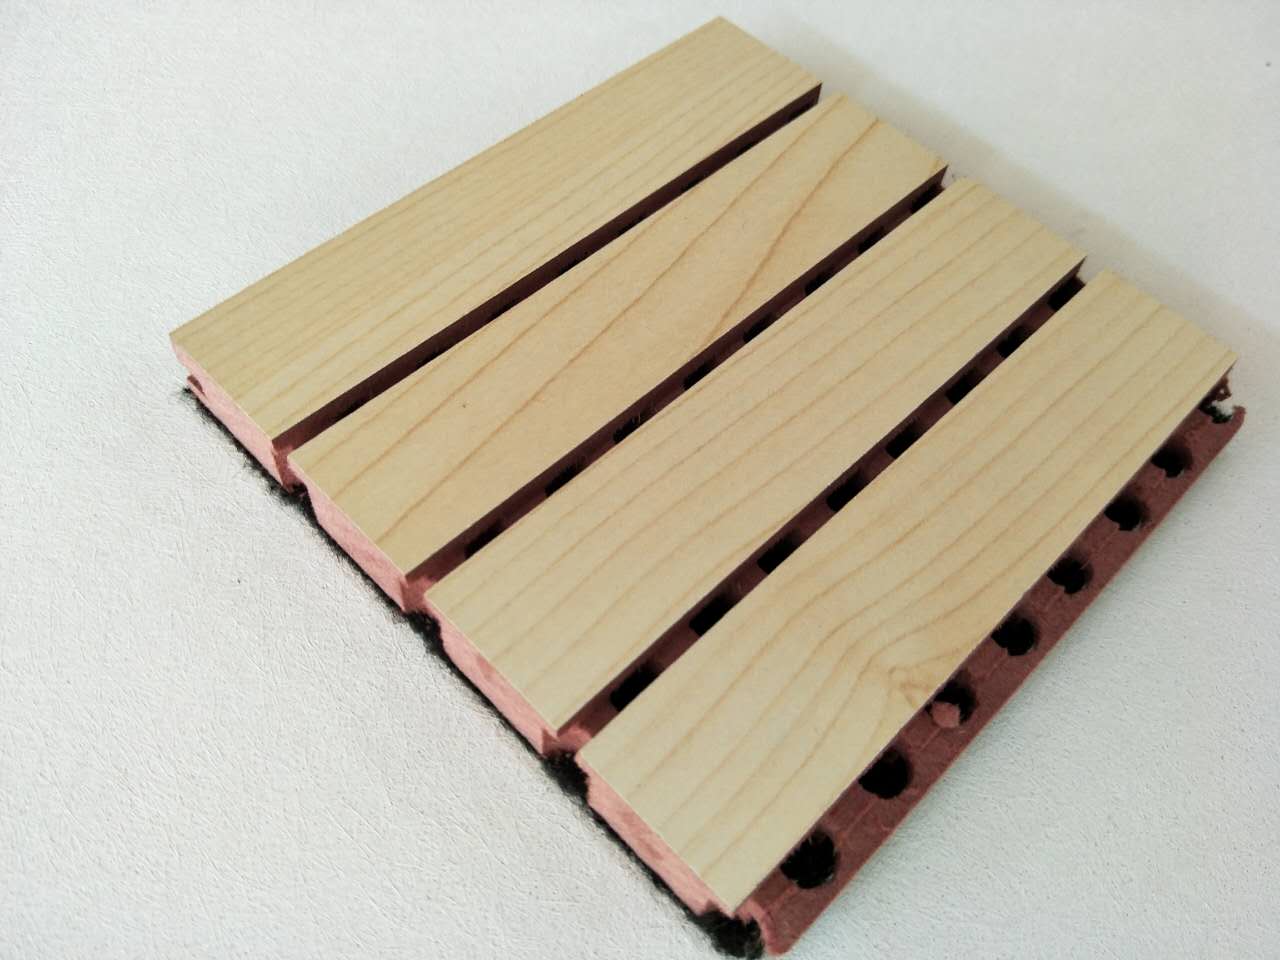 供应佛山市厂家直销槽木吸音板_环保板丨陶铝板等各种吸音隔音材料